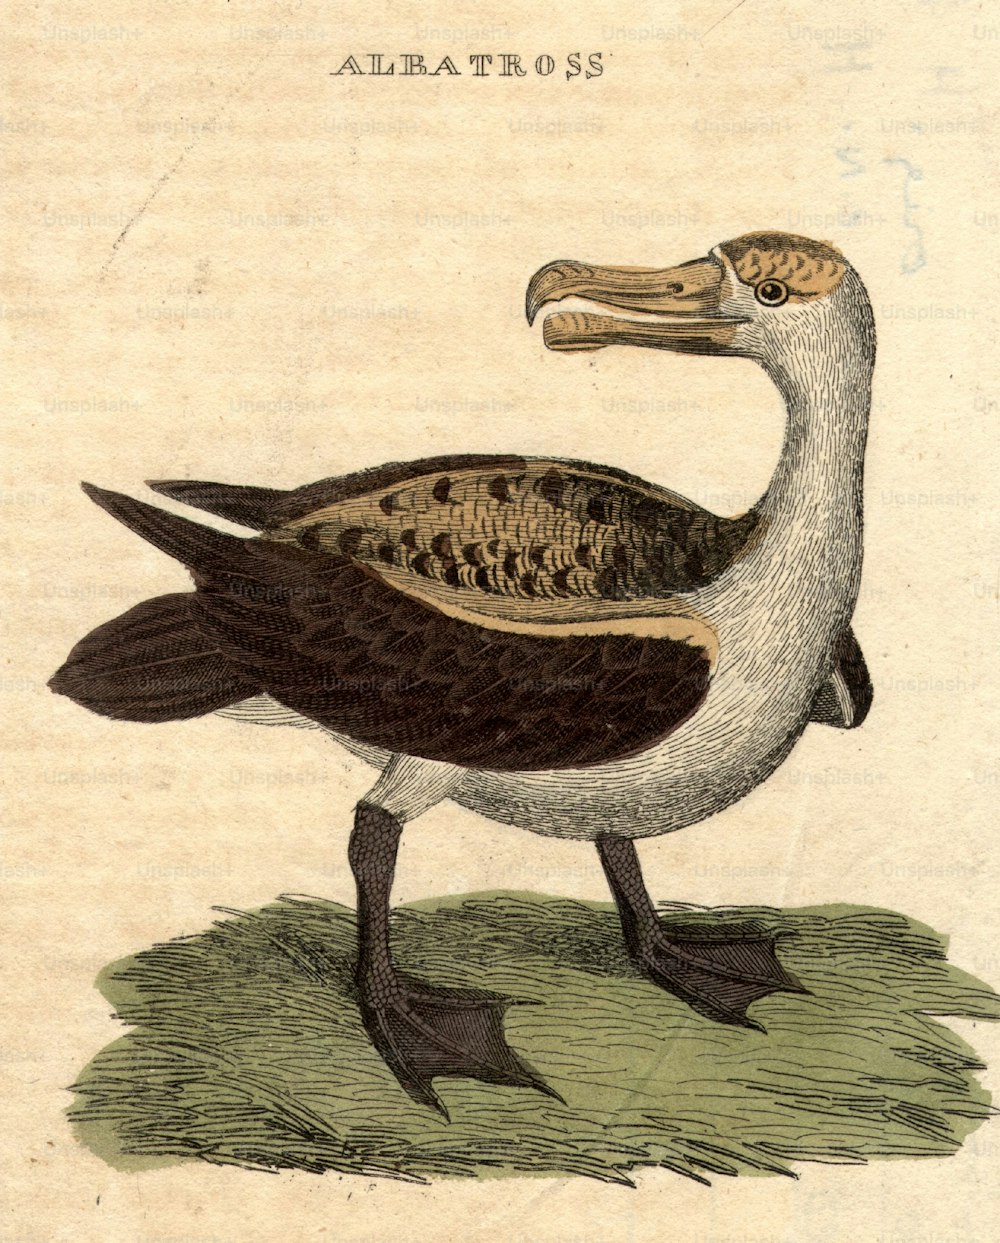 Circa 1800: Un albatros, un ave marina de alas grandes capaz de realizar largos vuelos.  (Foto de Hulton Archive/Getty Images)